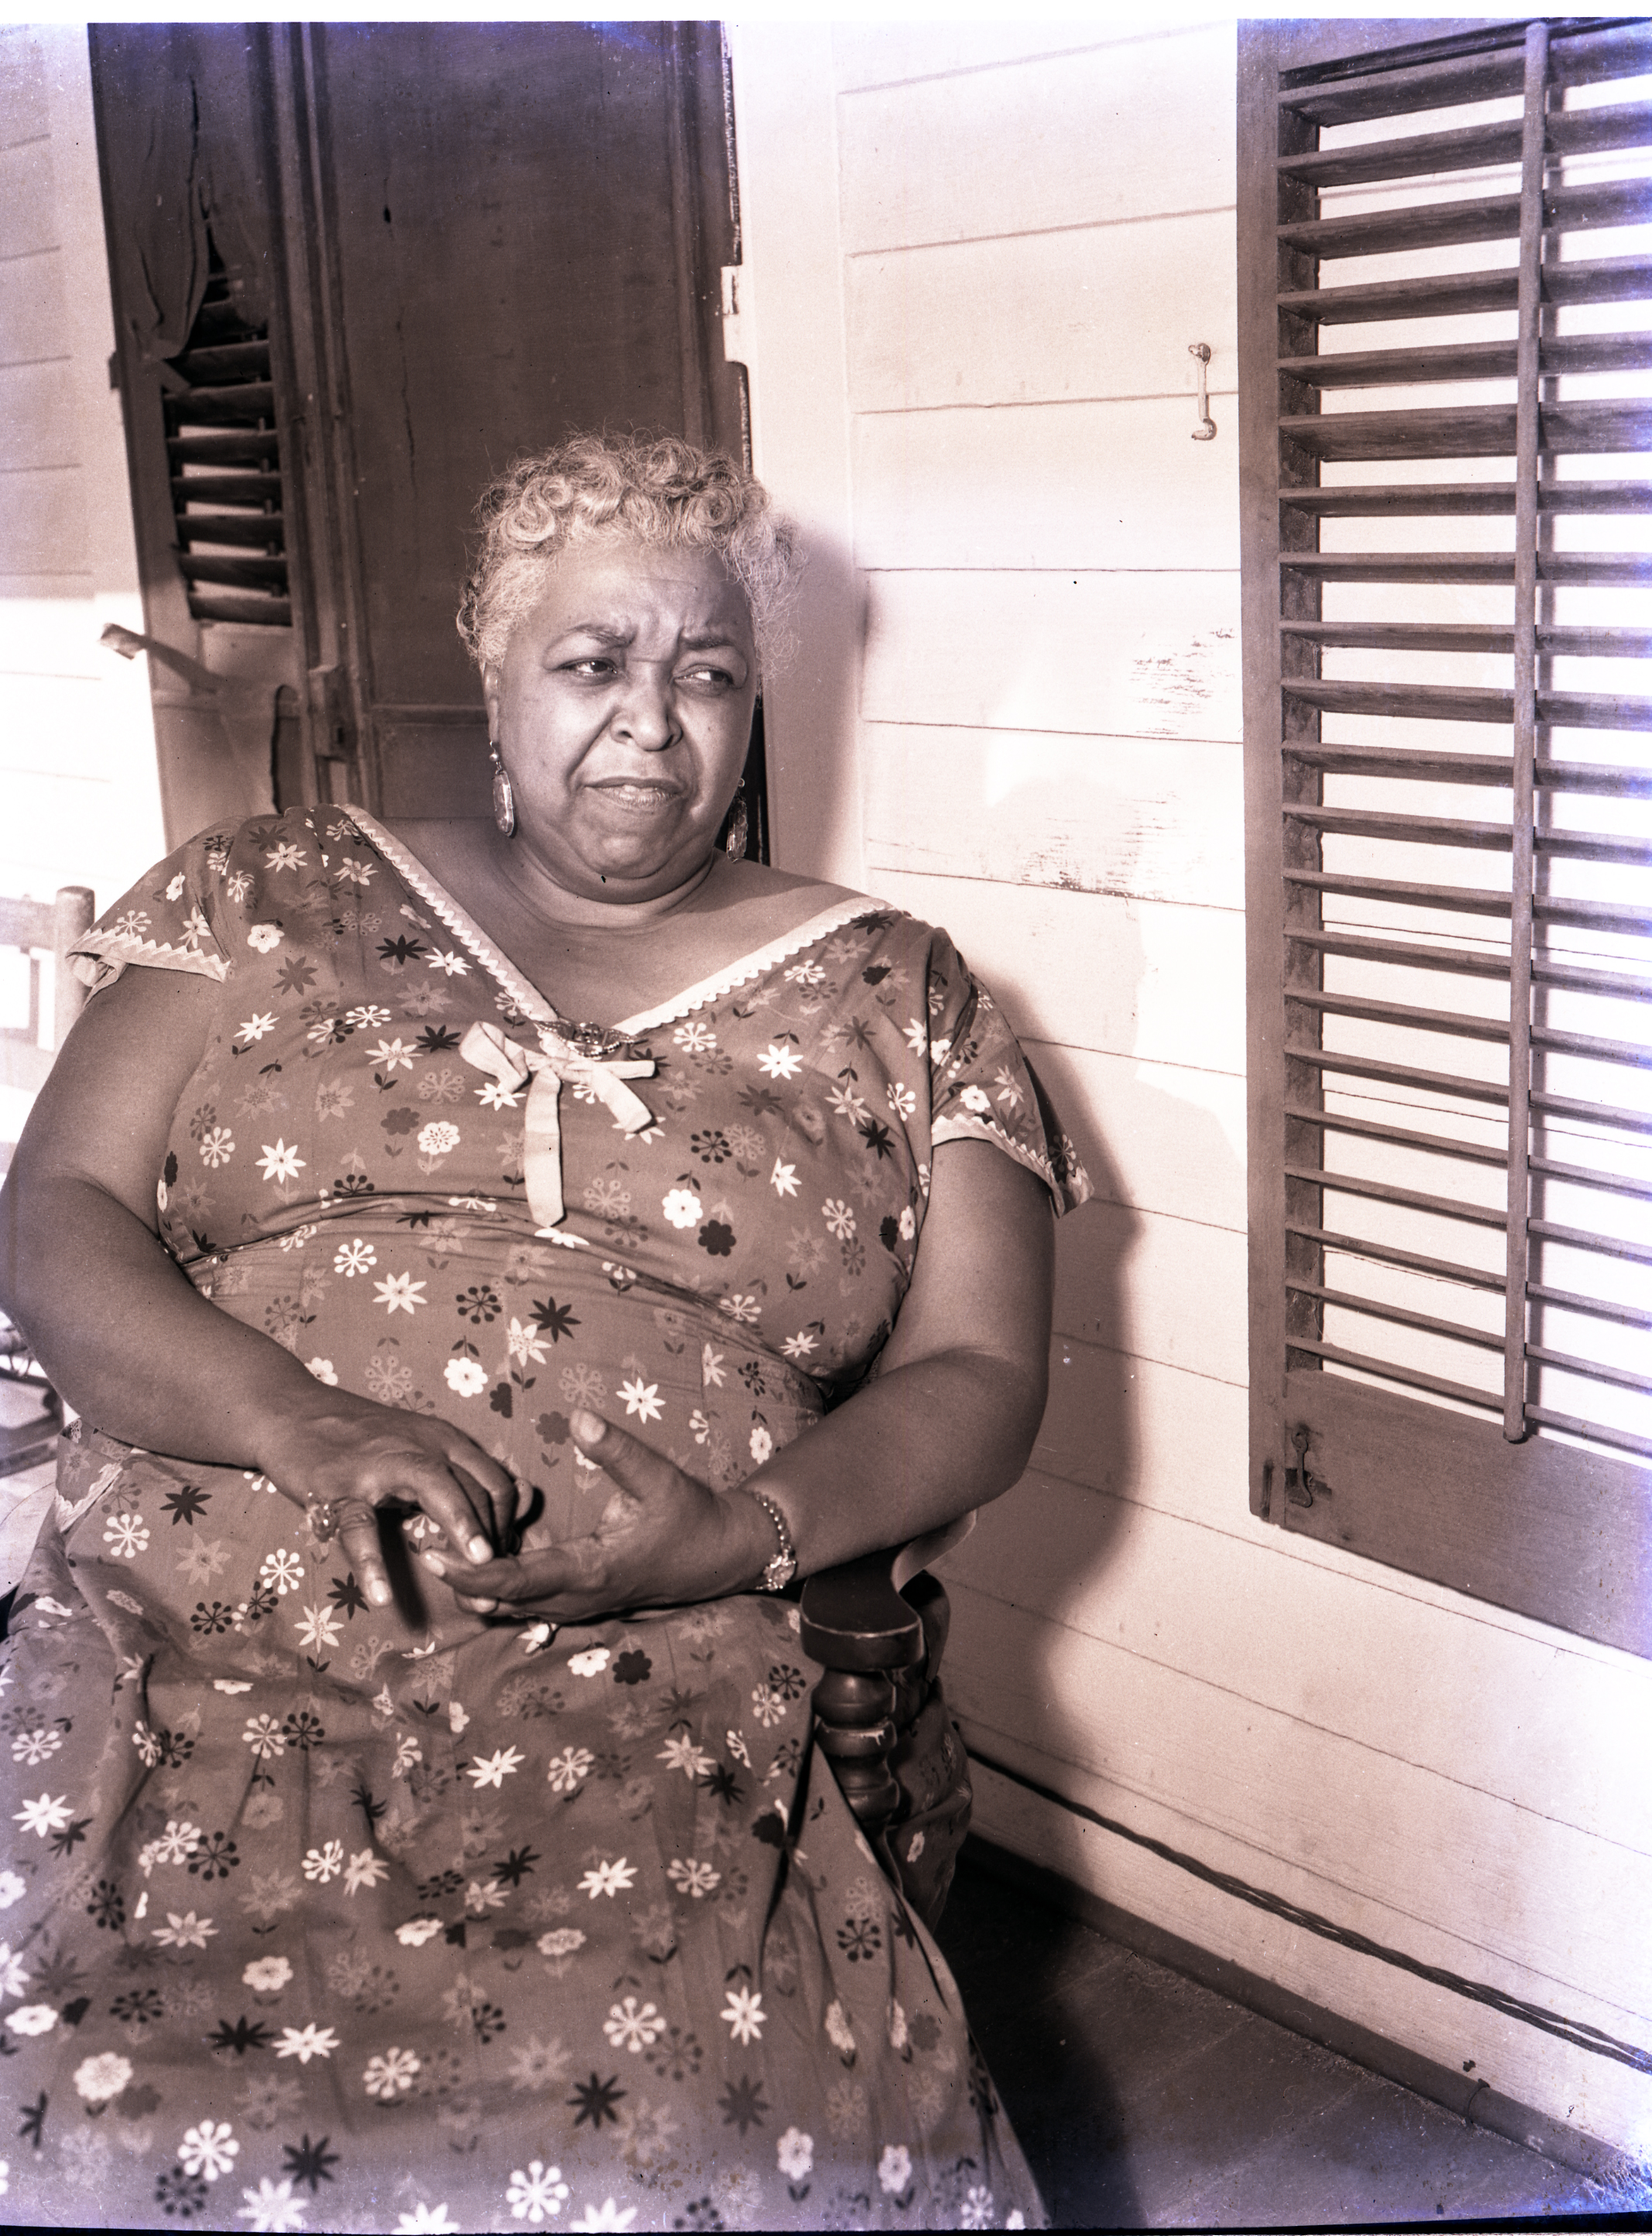 Ethel Waters as an Elder